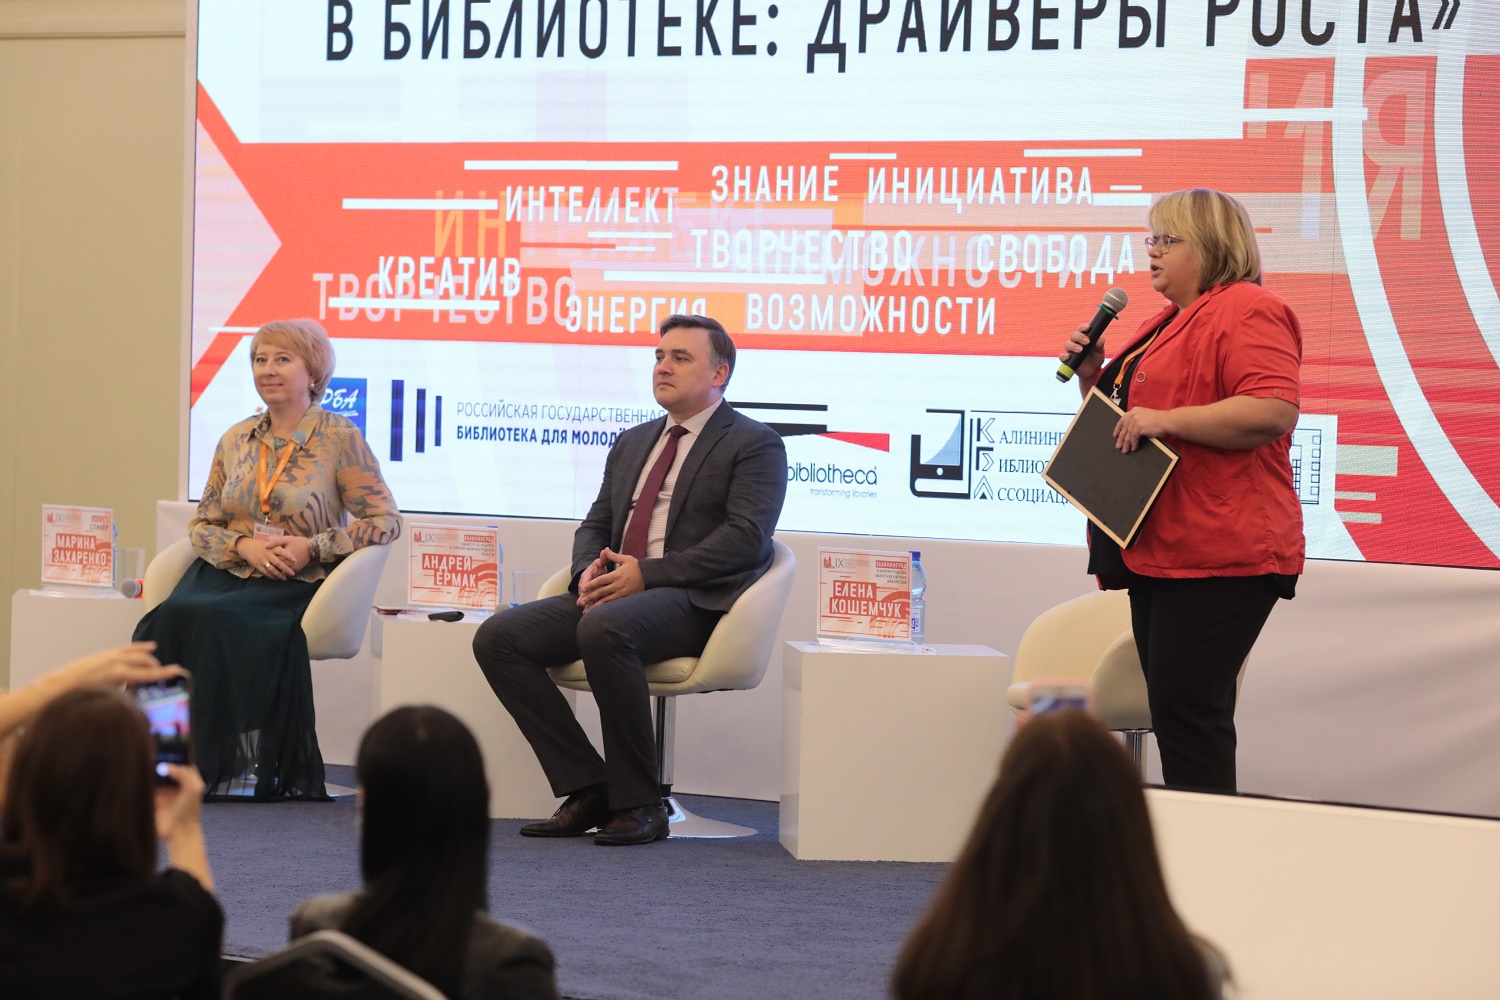 Сегодня в Калининграде стартовал IX Форум молодых библиотекарей России